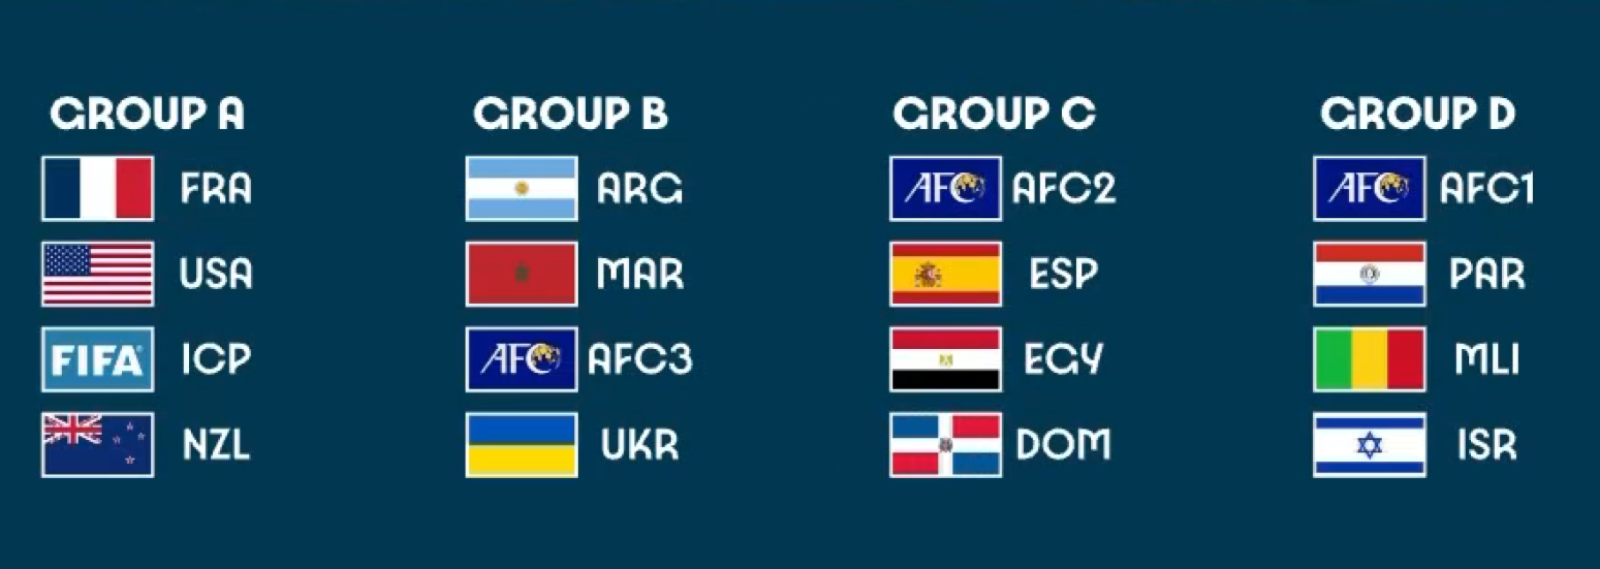 Imagen Los grupos del fútbol masculino en los Juegos Olímpicos de París 2024.